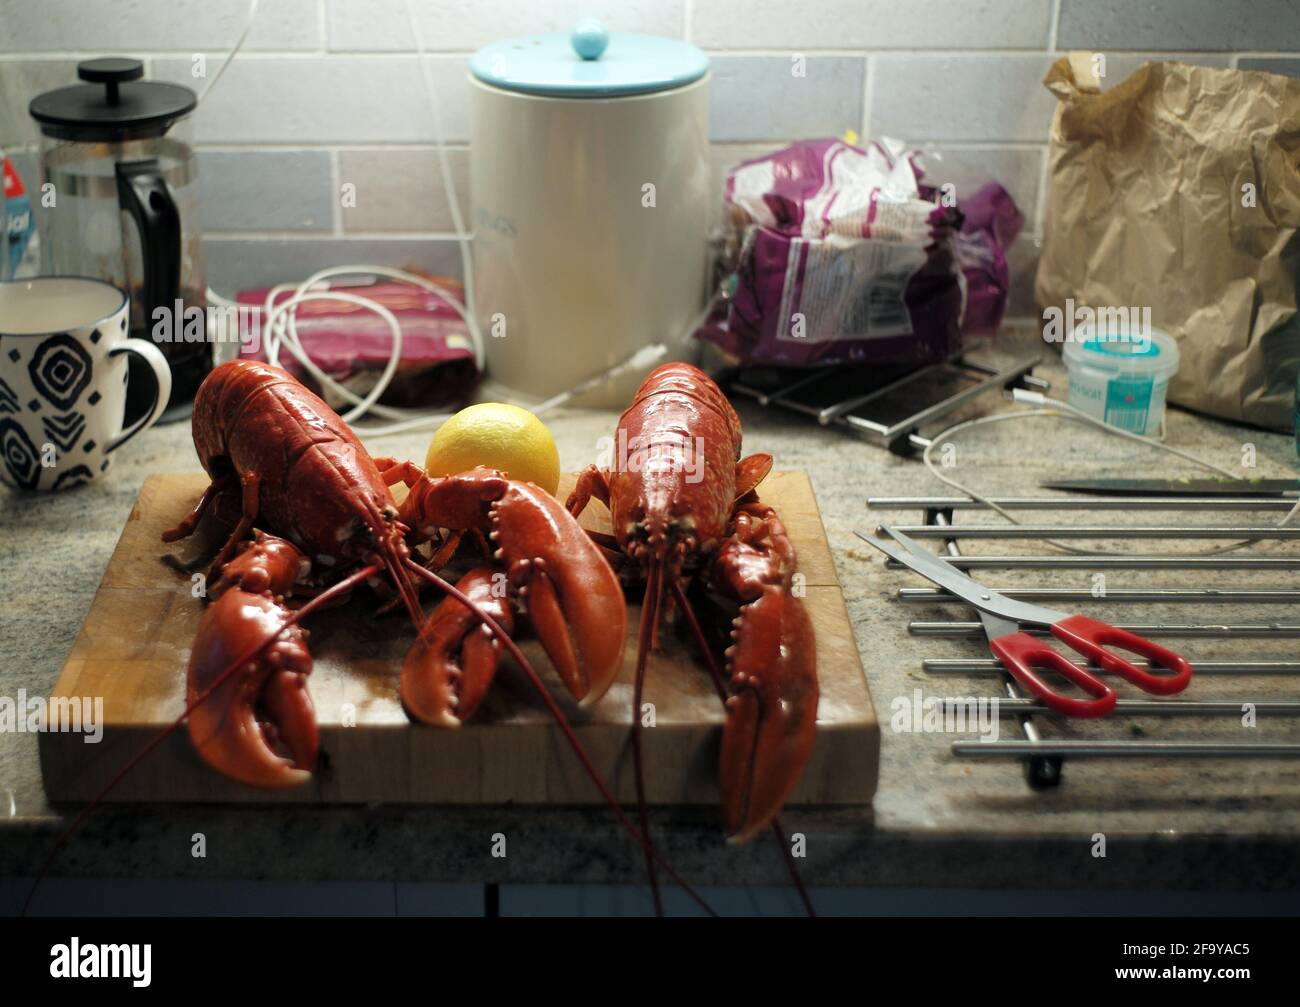 Due aragoste sono pronte per essere preparate per un pasto nella cucina di un cottage di vacanza a Portscatho, Cornovaglia, Gran Bretagna 11 luglio 2020. Foto John Voos Foto Stock